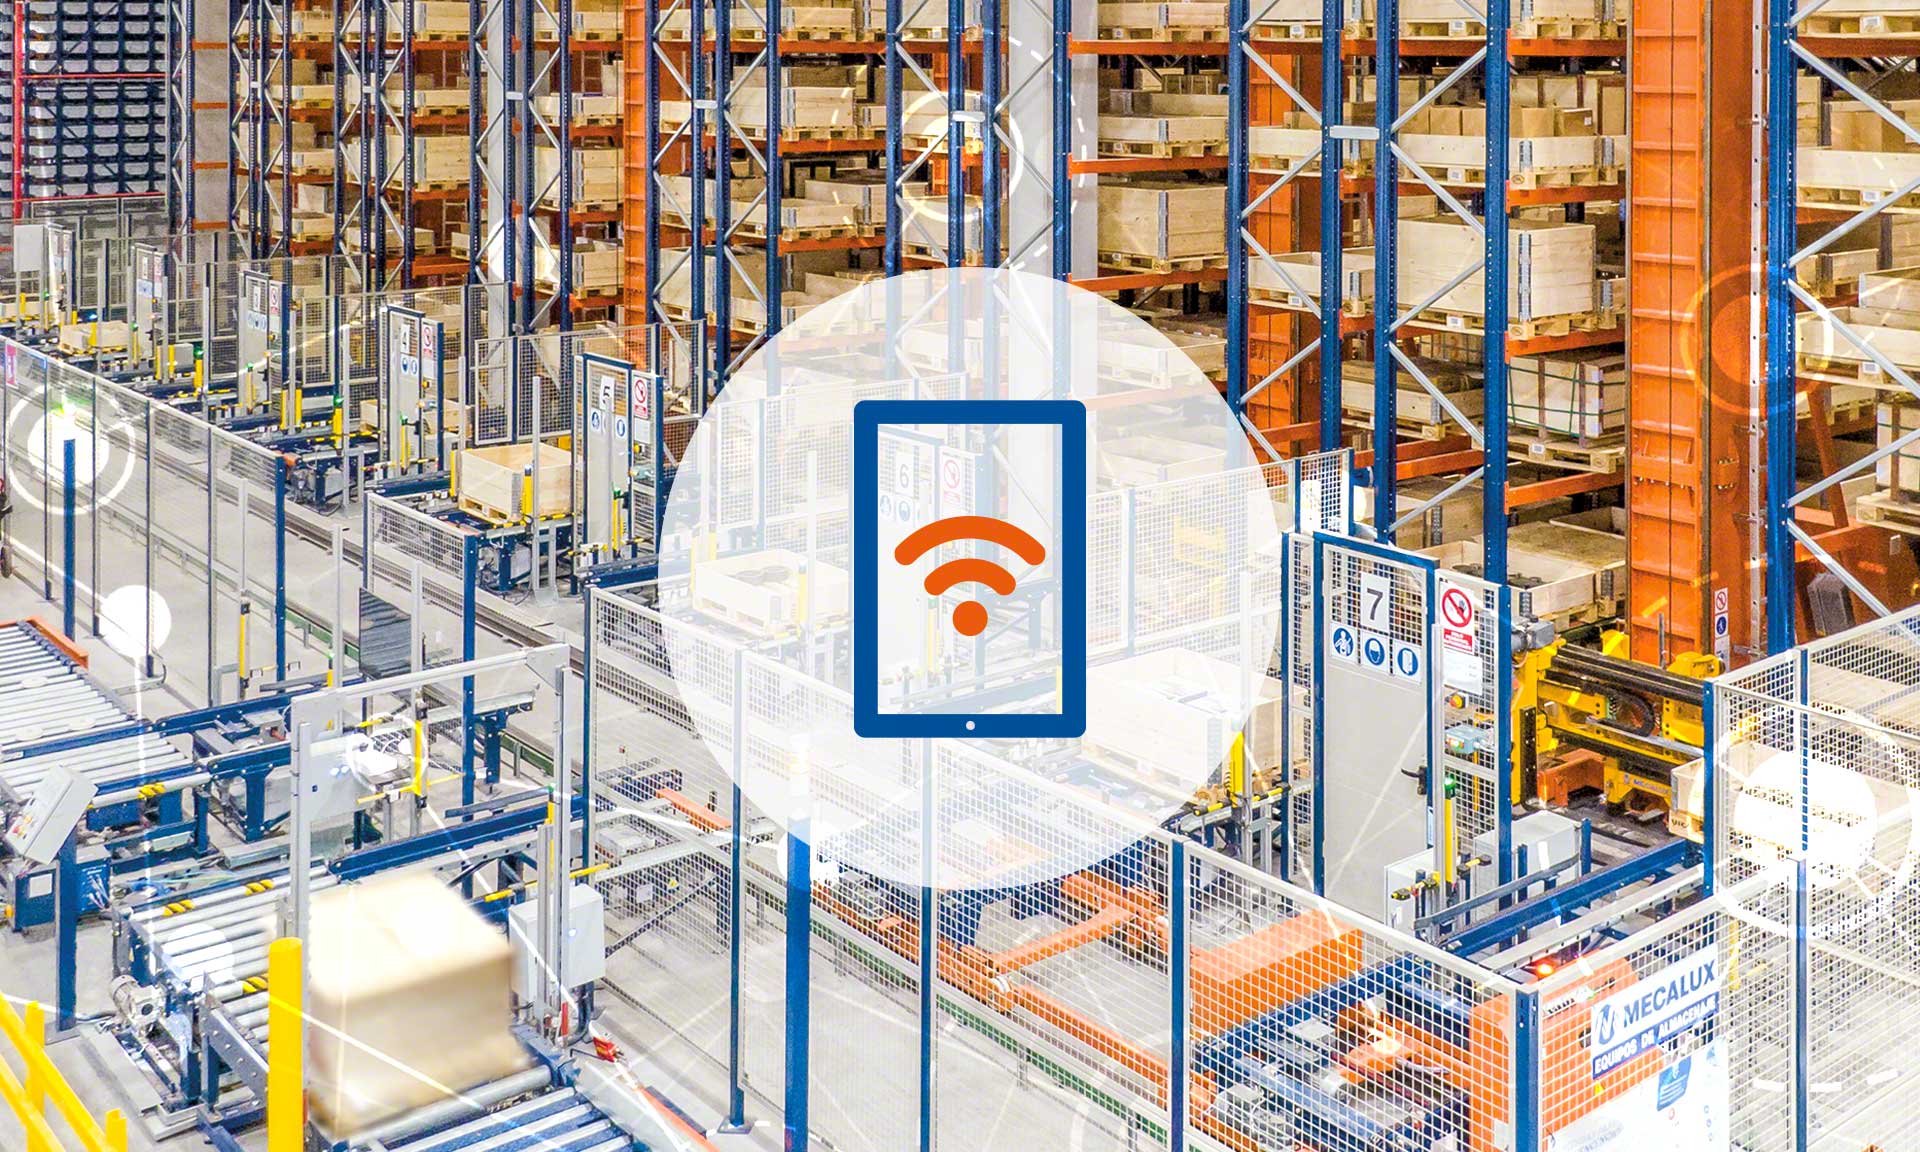 Warehouse WiFi: another pillar of logistics